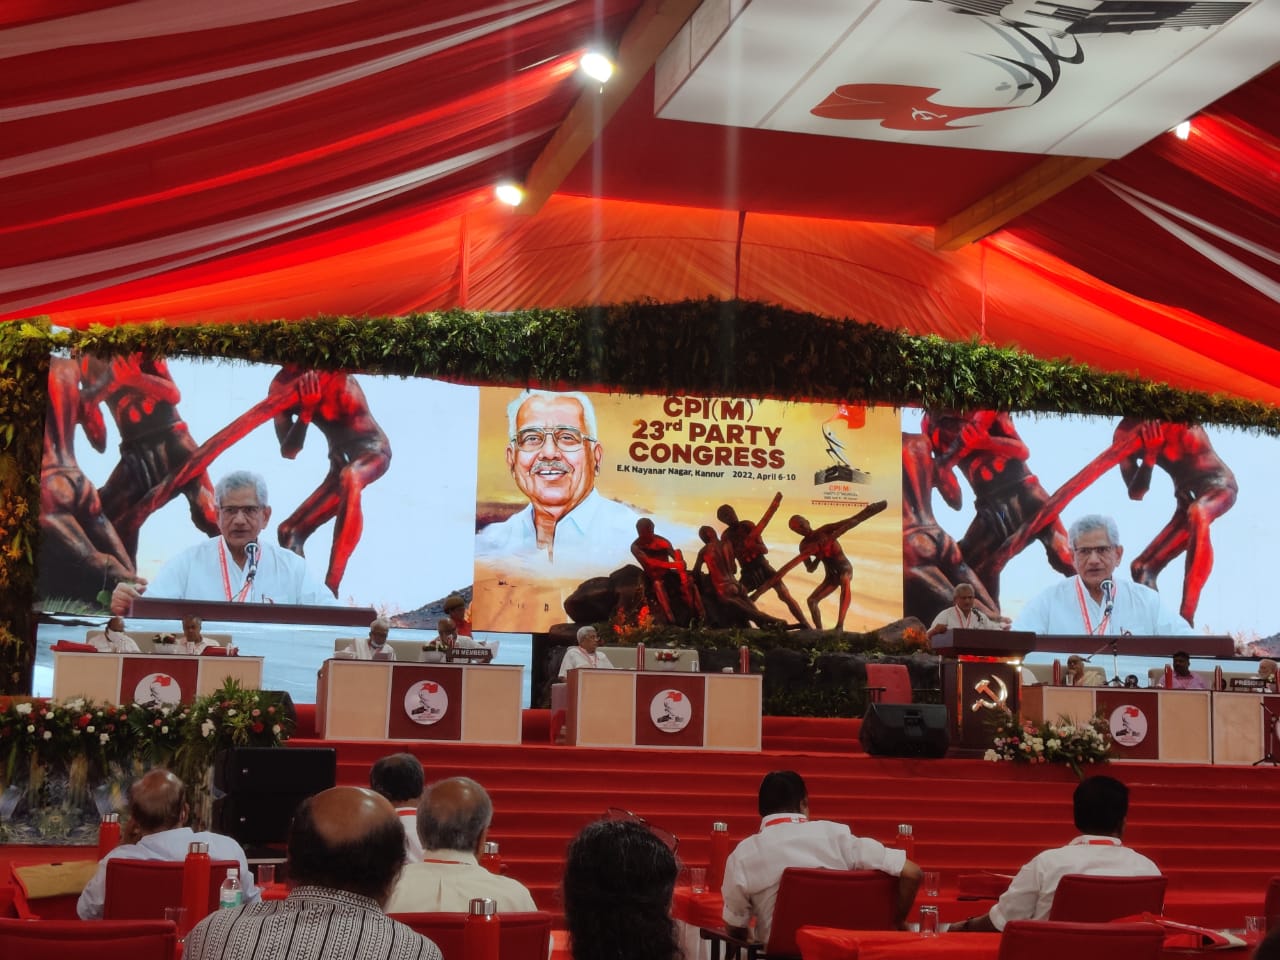 Sitaram Yechury réélu Secrétaire général du Parti Communiste d'Inde (Marxiste)